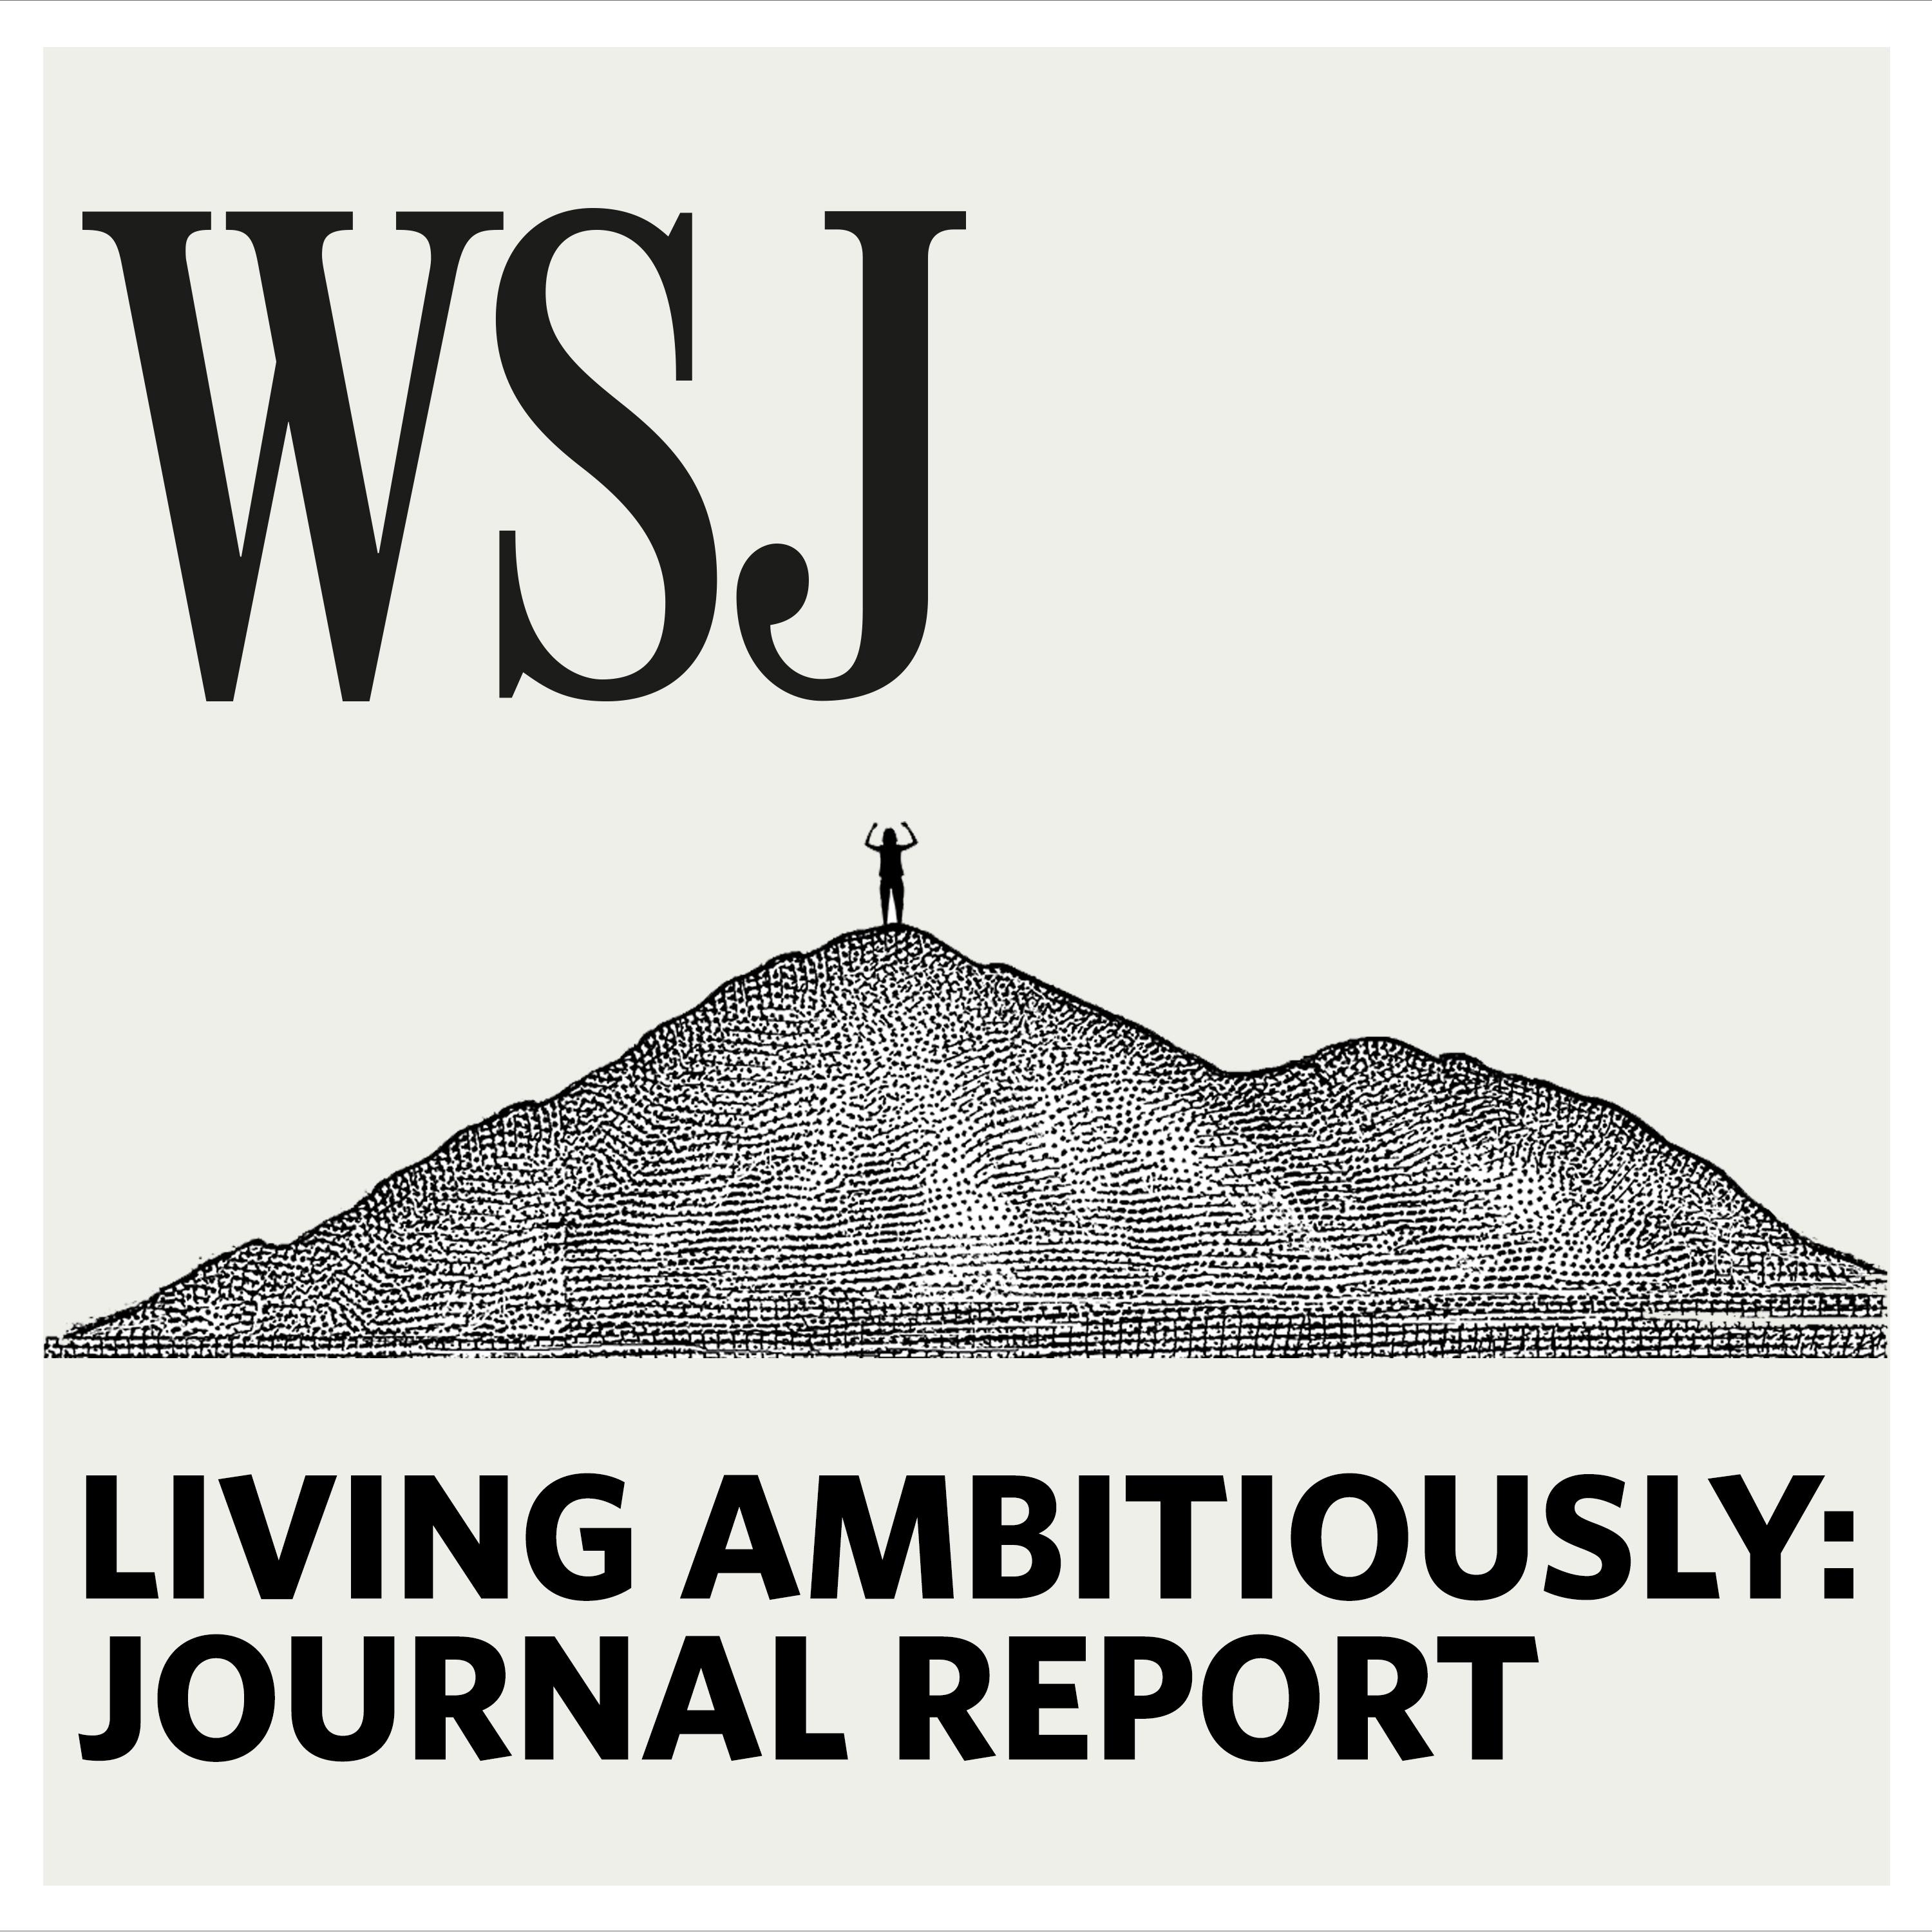 WSJ Journal Report:The Wall Street Journal